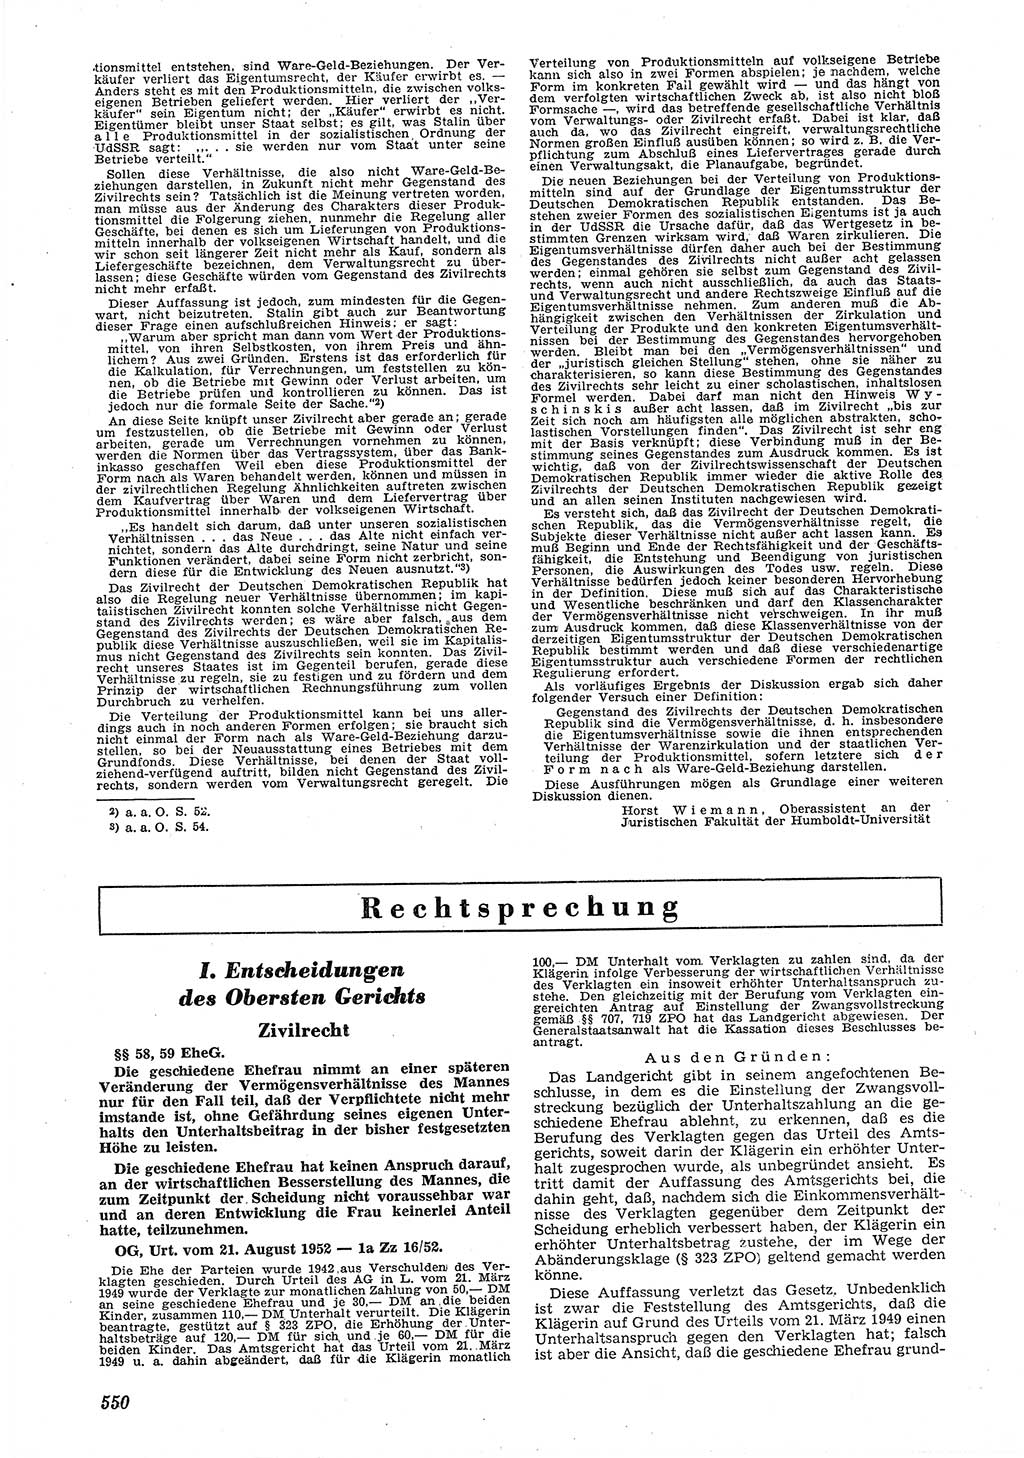 Neue Justiz (NJ), Zeitschrift für Recht und Rechtswissenschaft [Deutsche Demokratische Republik (DDR)], 6. Jahrgang 1952, Seite 550 (NJ DDR 1952, S. 550)